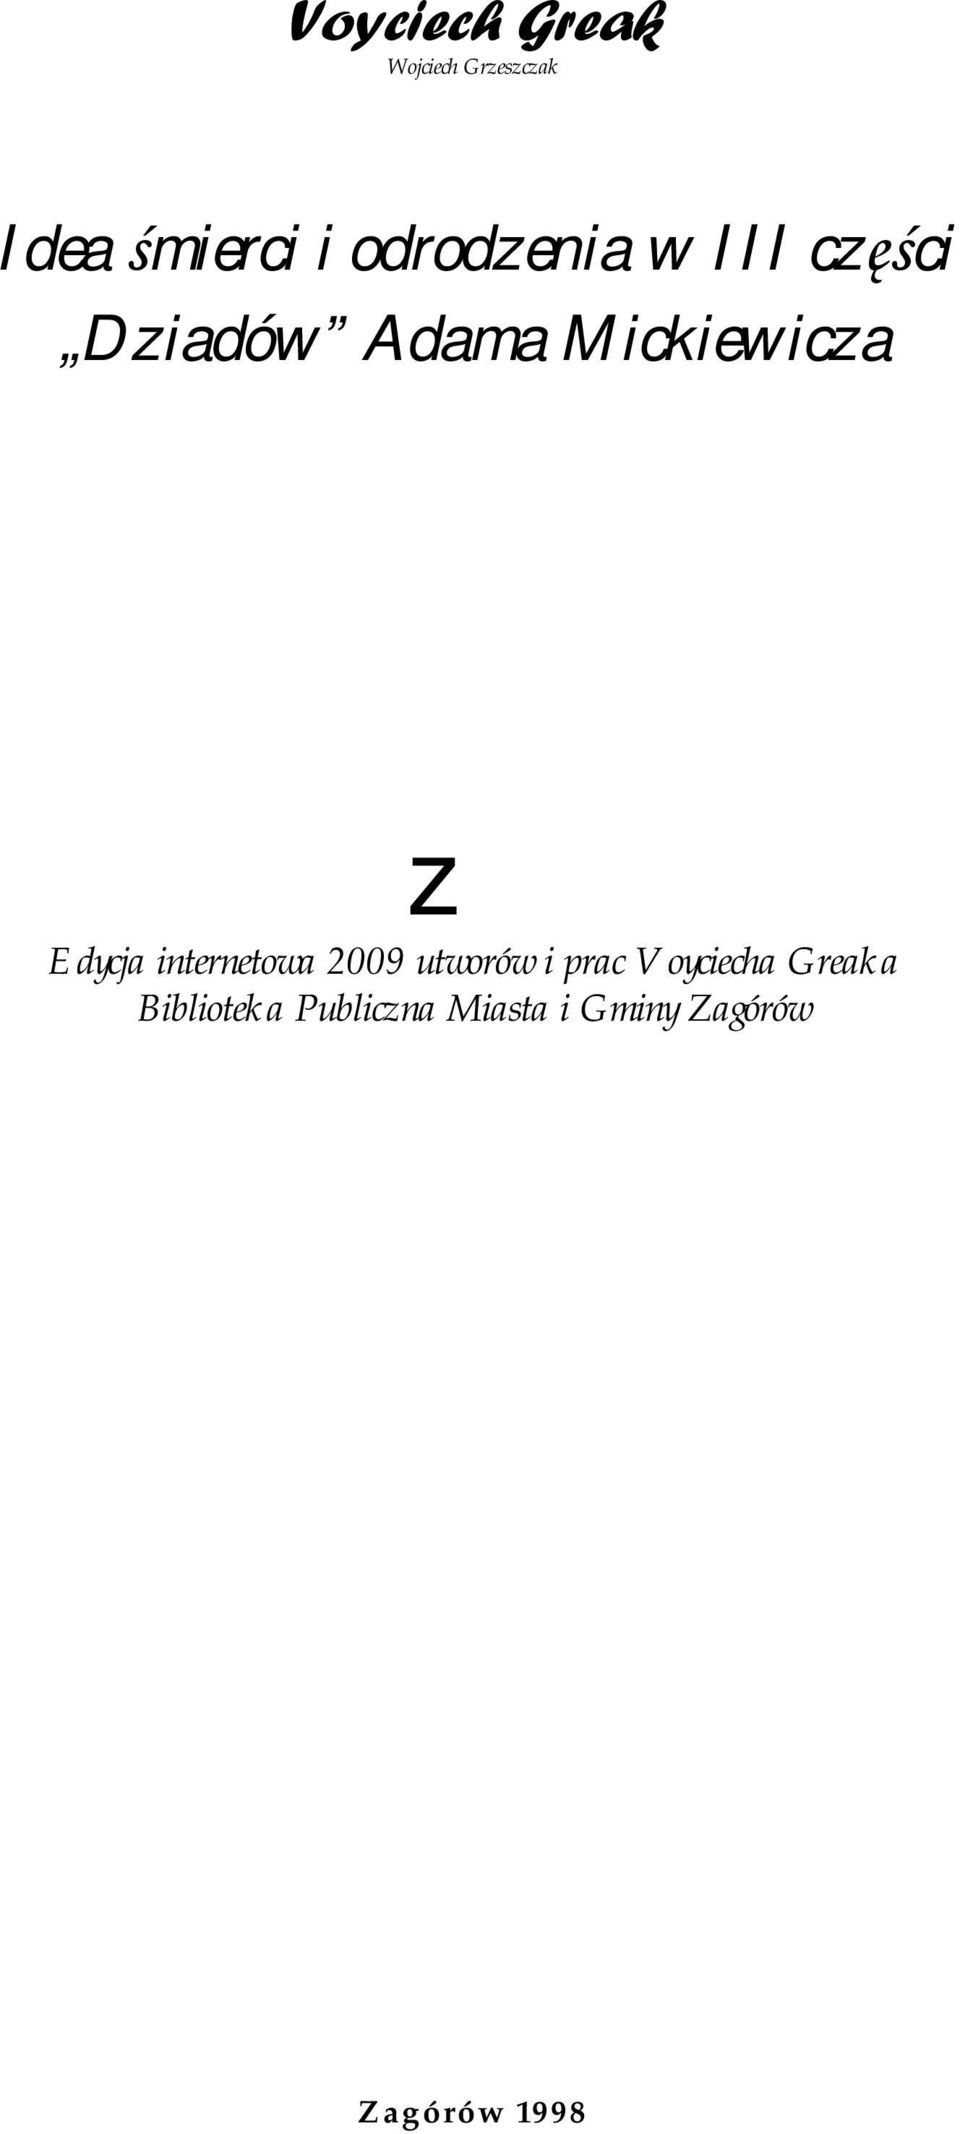 Edycja internetowa 2009 utworów i prac Voyciecha